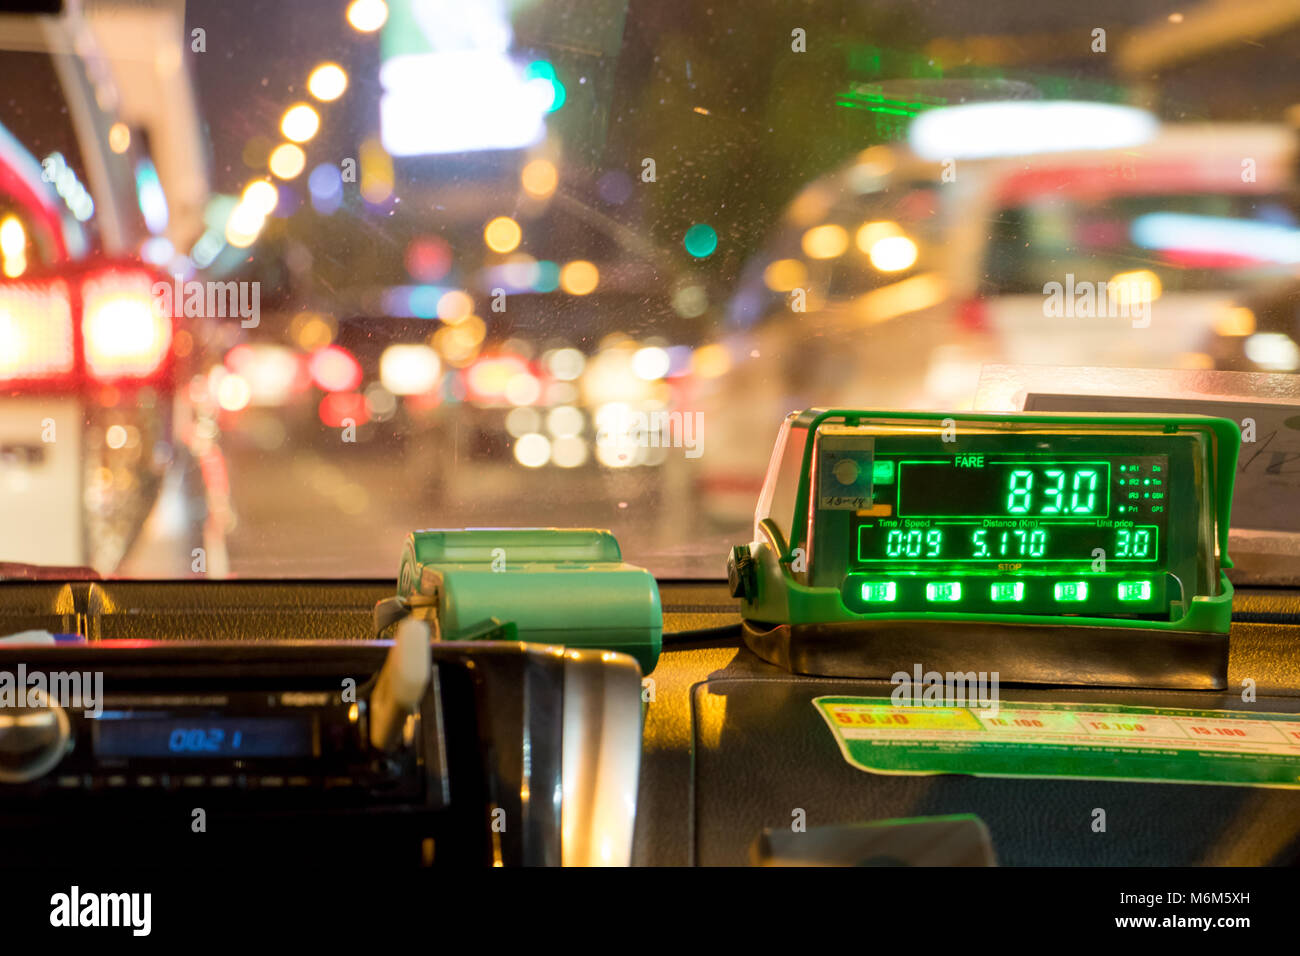 Die digitale Taxameter auf dem Armaturenbrett des Cab zeigt Kilometer und Kosten. Nacht mit dem Taxi im Stau. Stockfoto